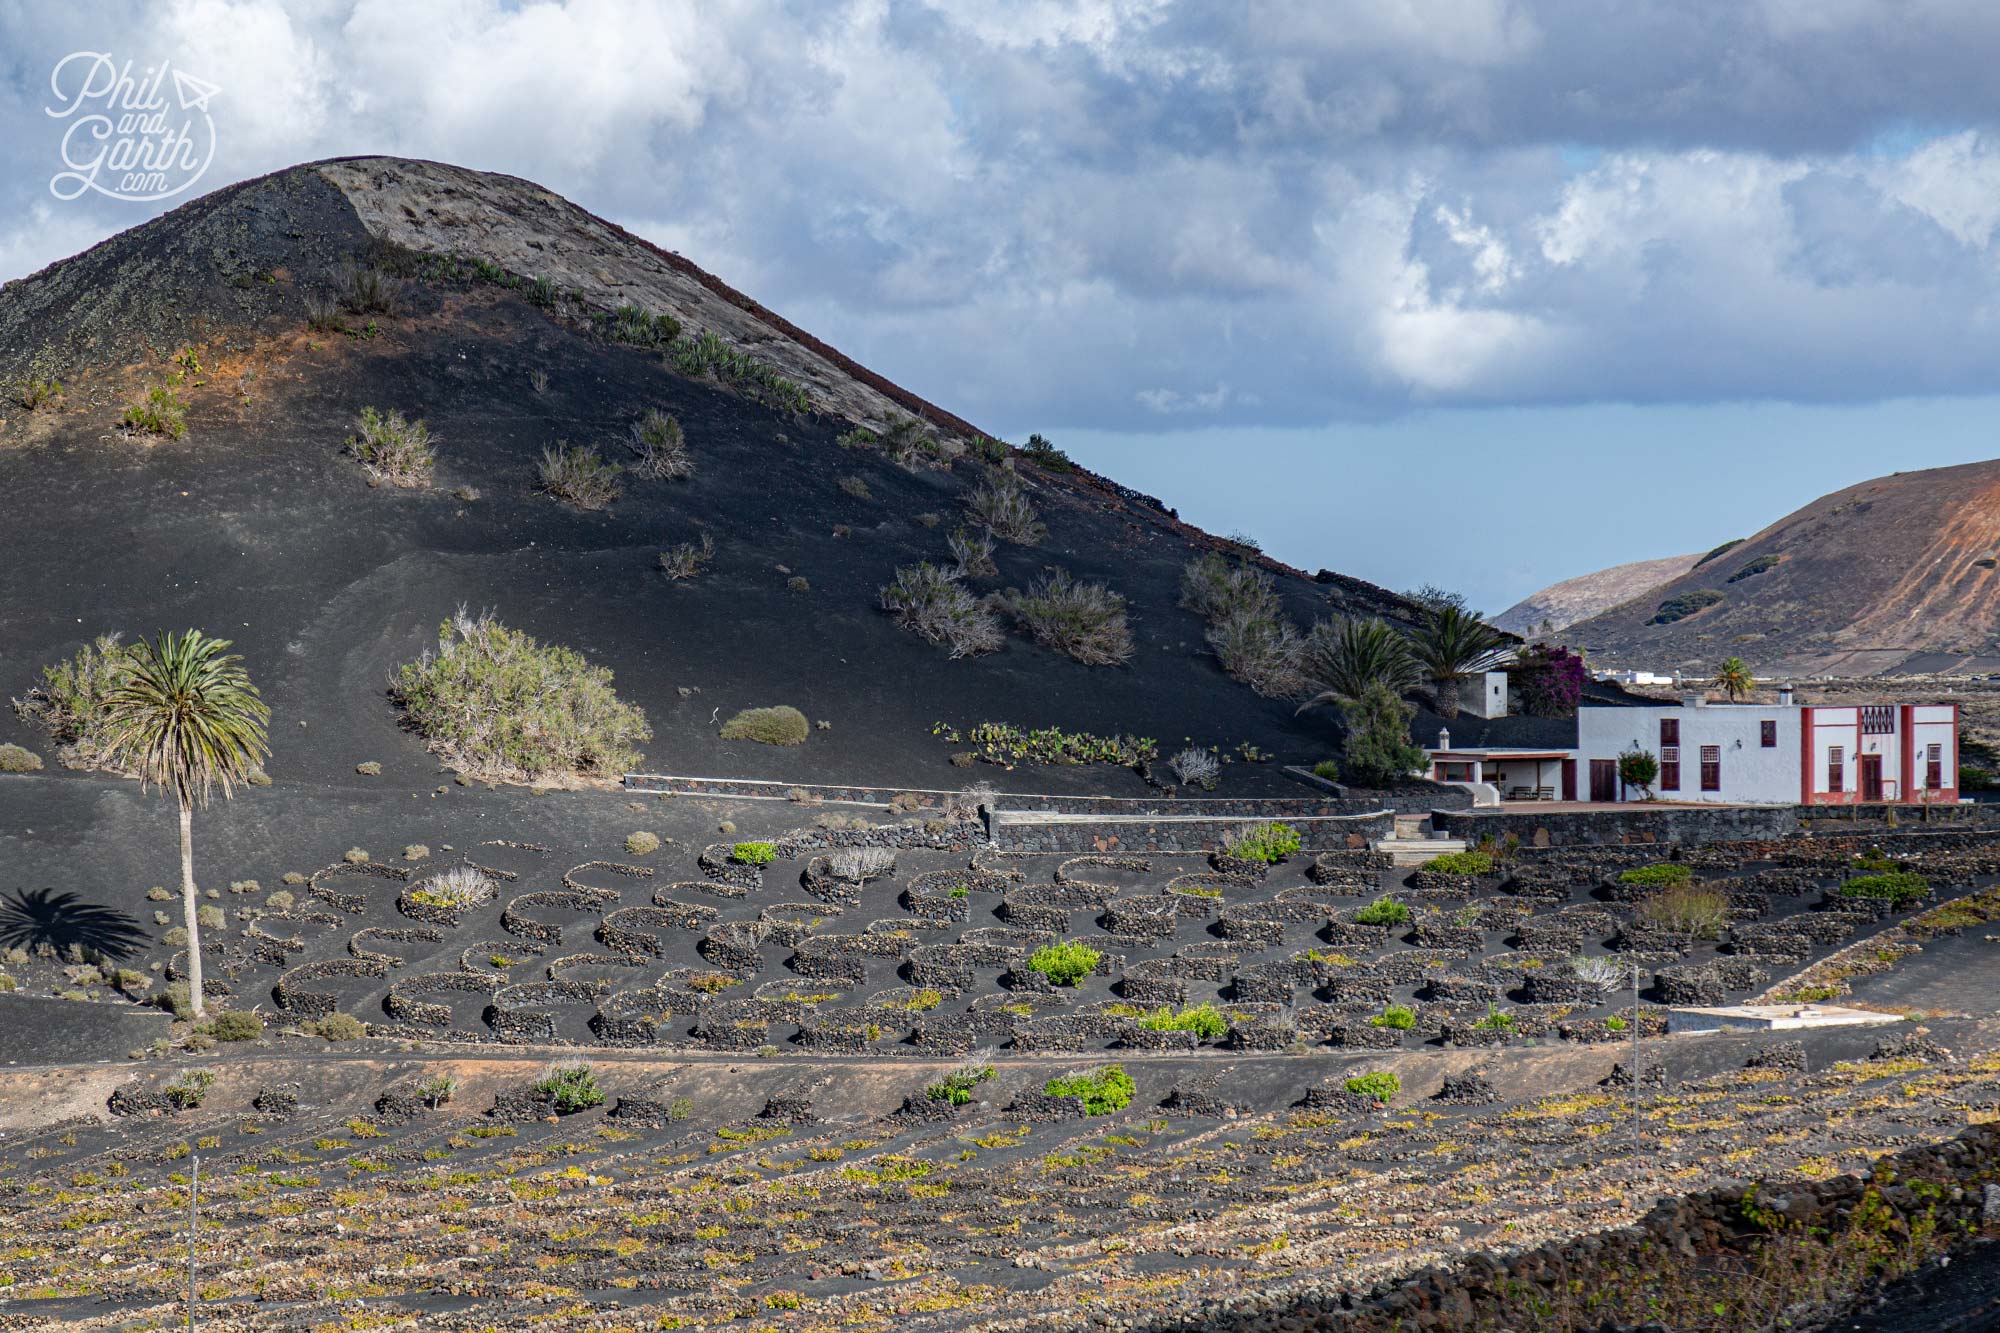 La Geria is Lanzarote’s Malvasia wine producing region